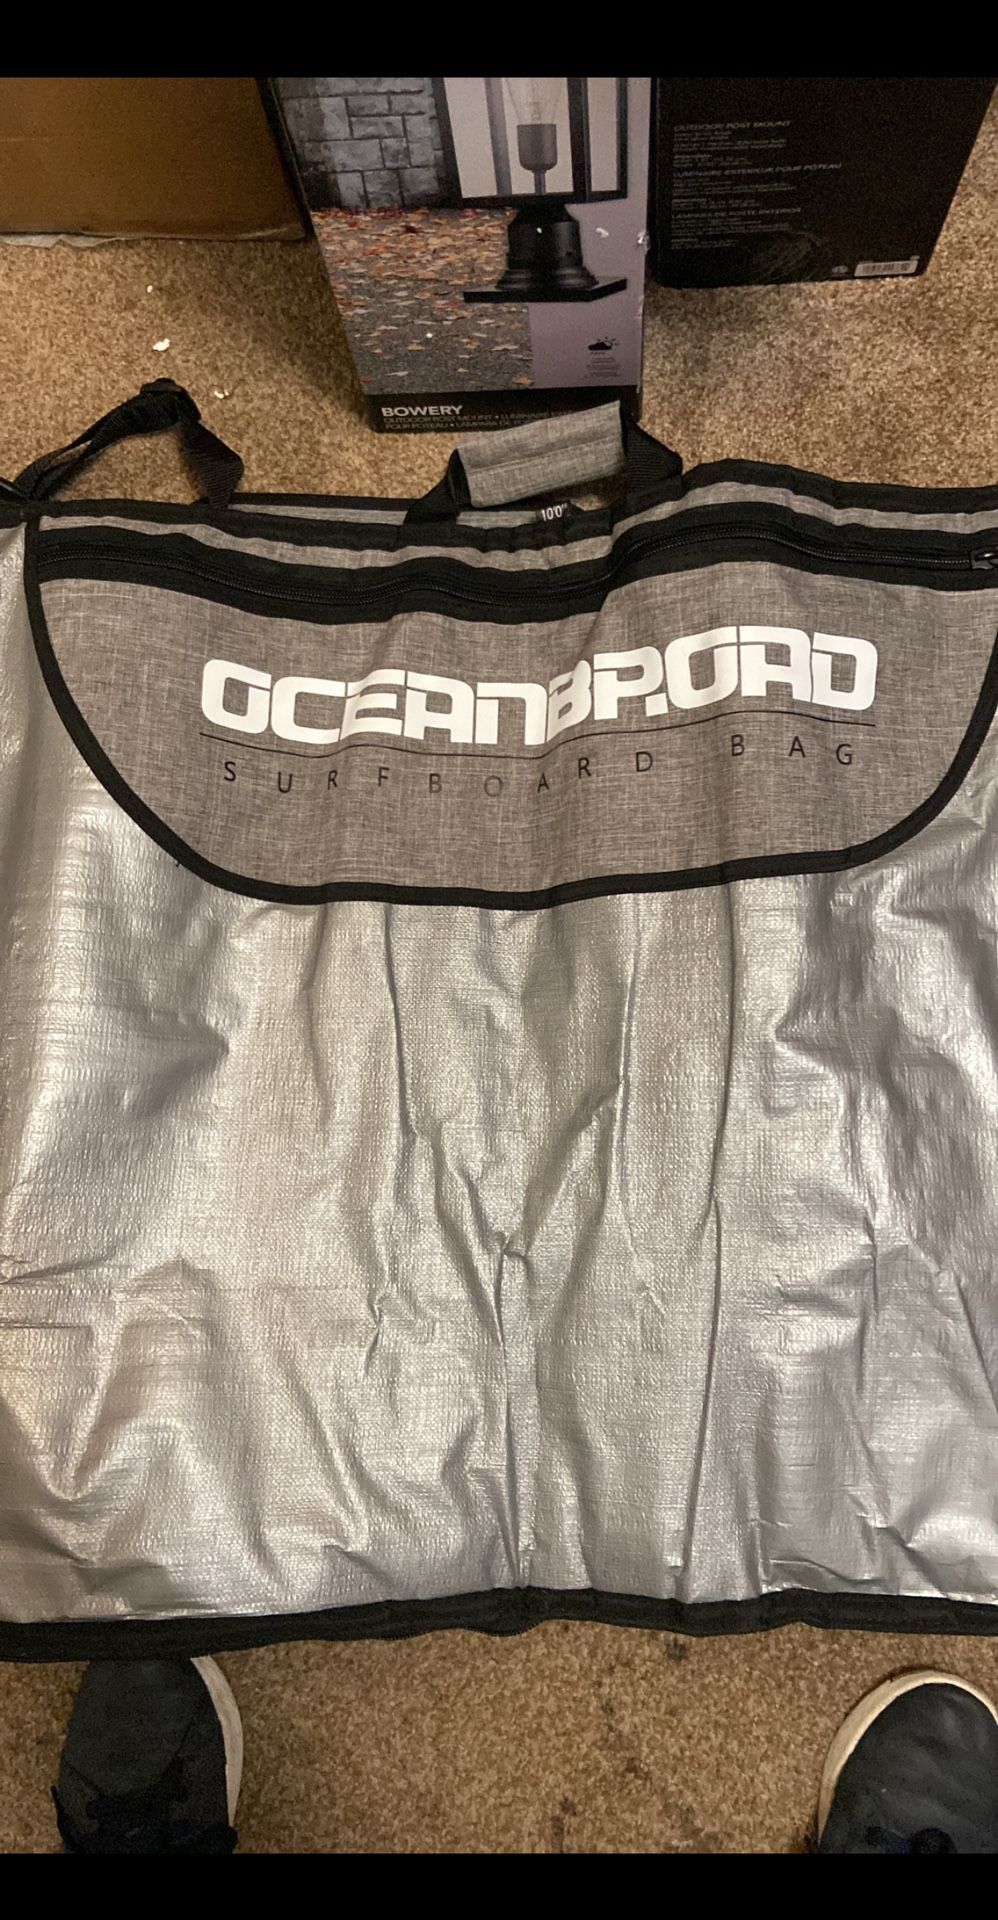 Surfboard Bag 